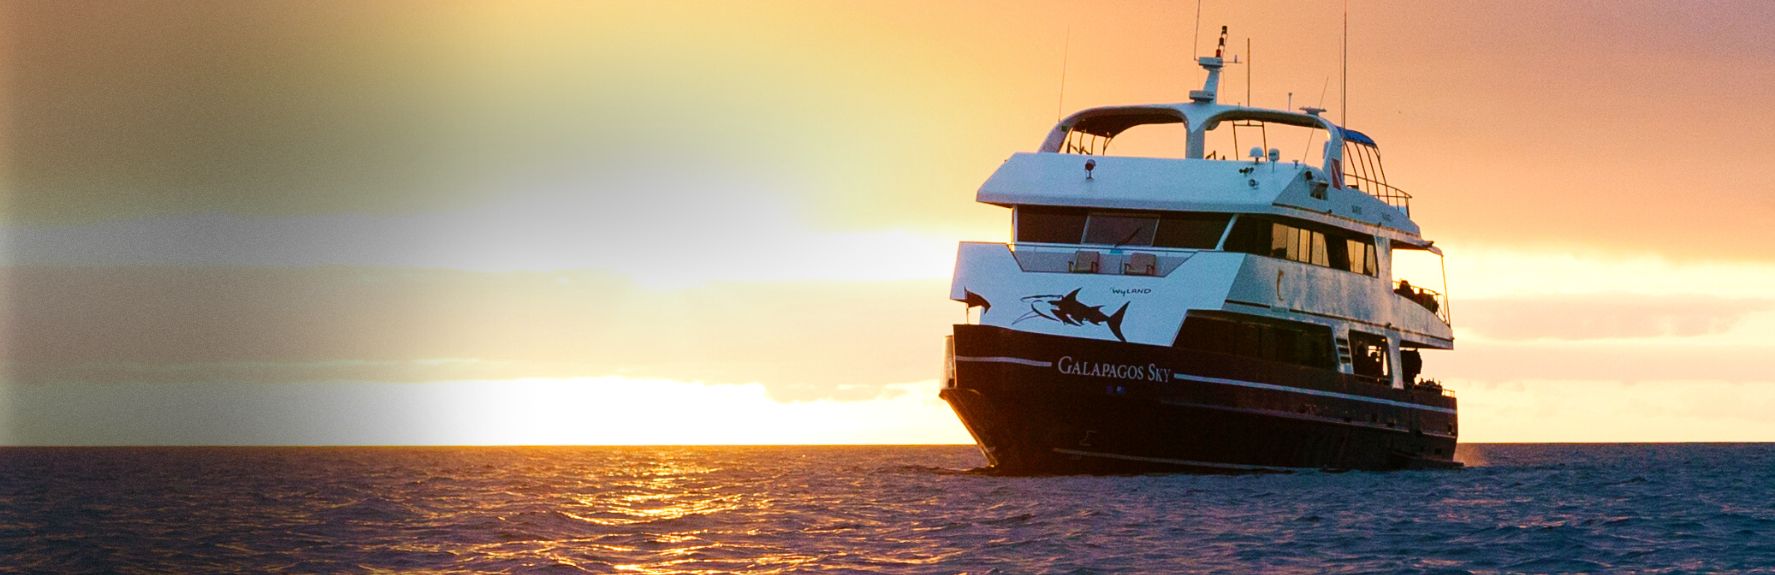 Galapagos Sky Cruise